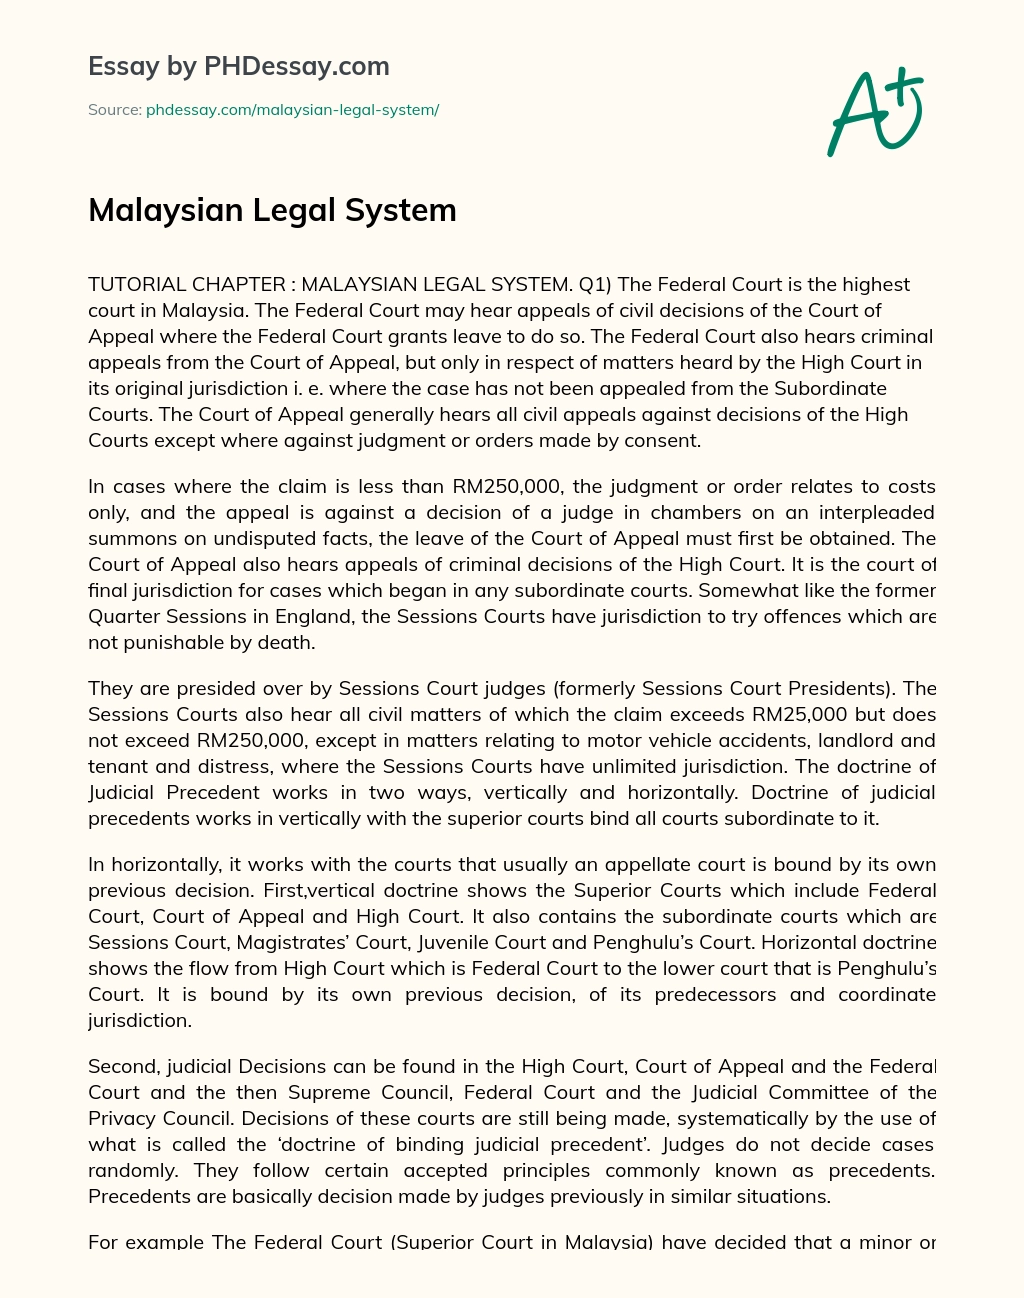 Malaysian Legal System essay